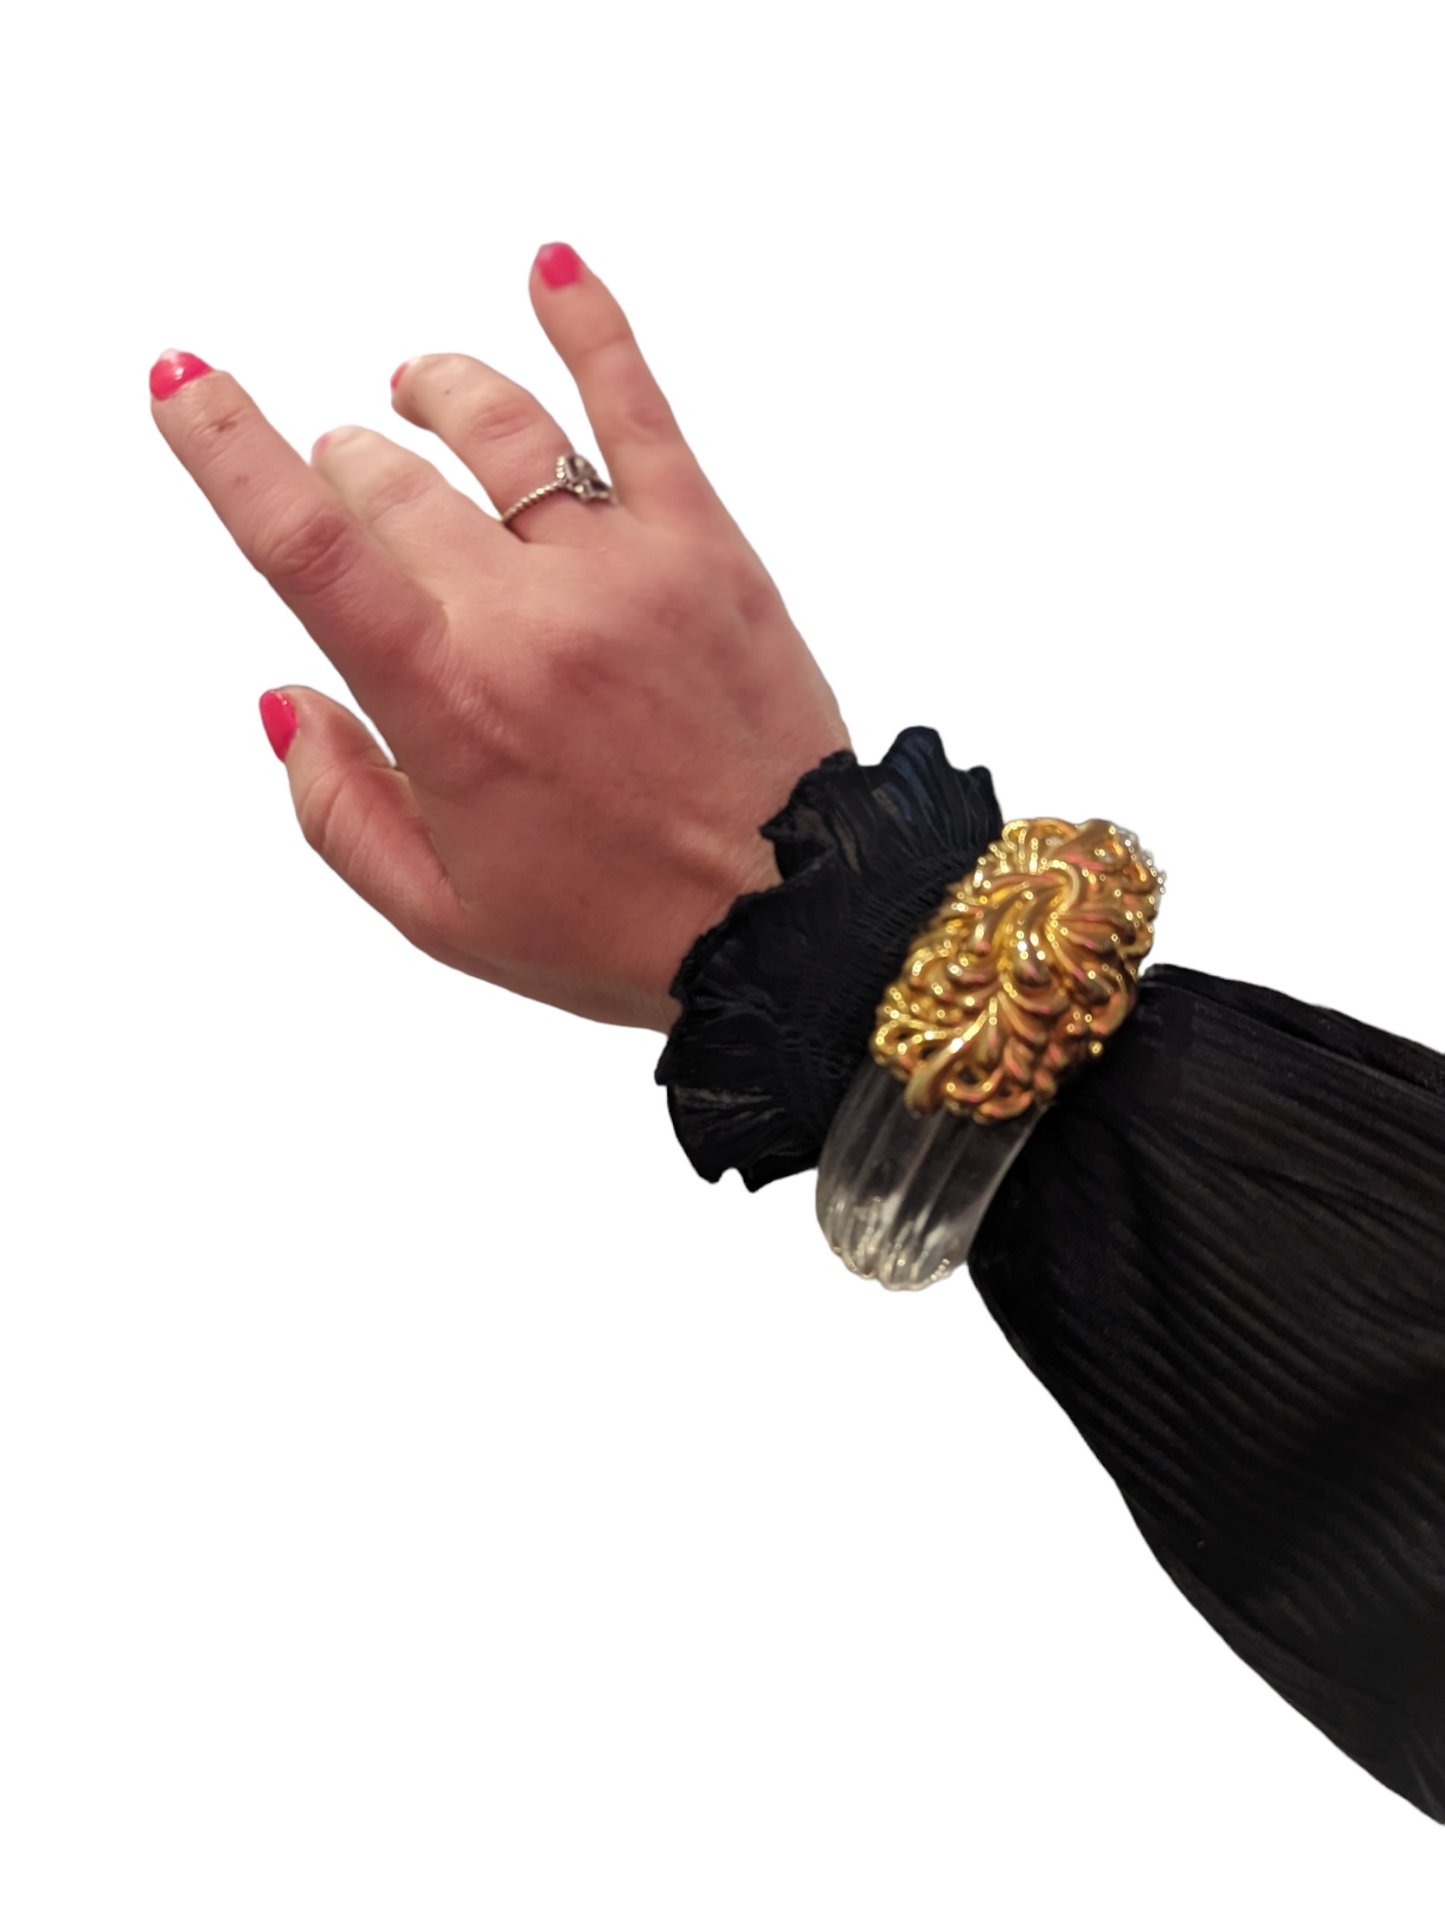 Vintage Lucite & Gold Magnetic Bracelet by Inna Citrine